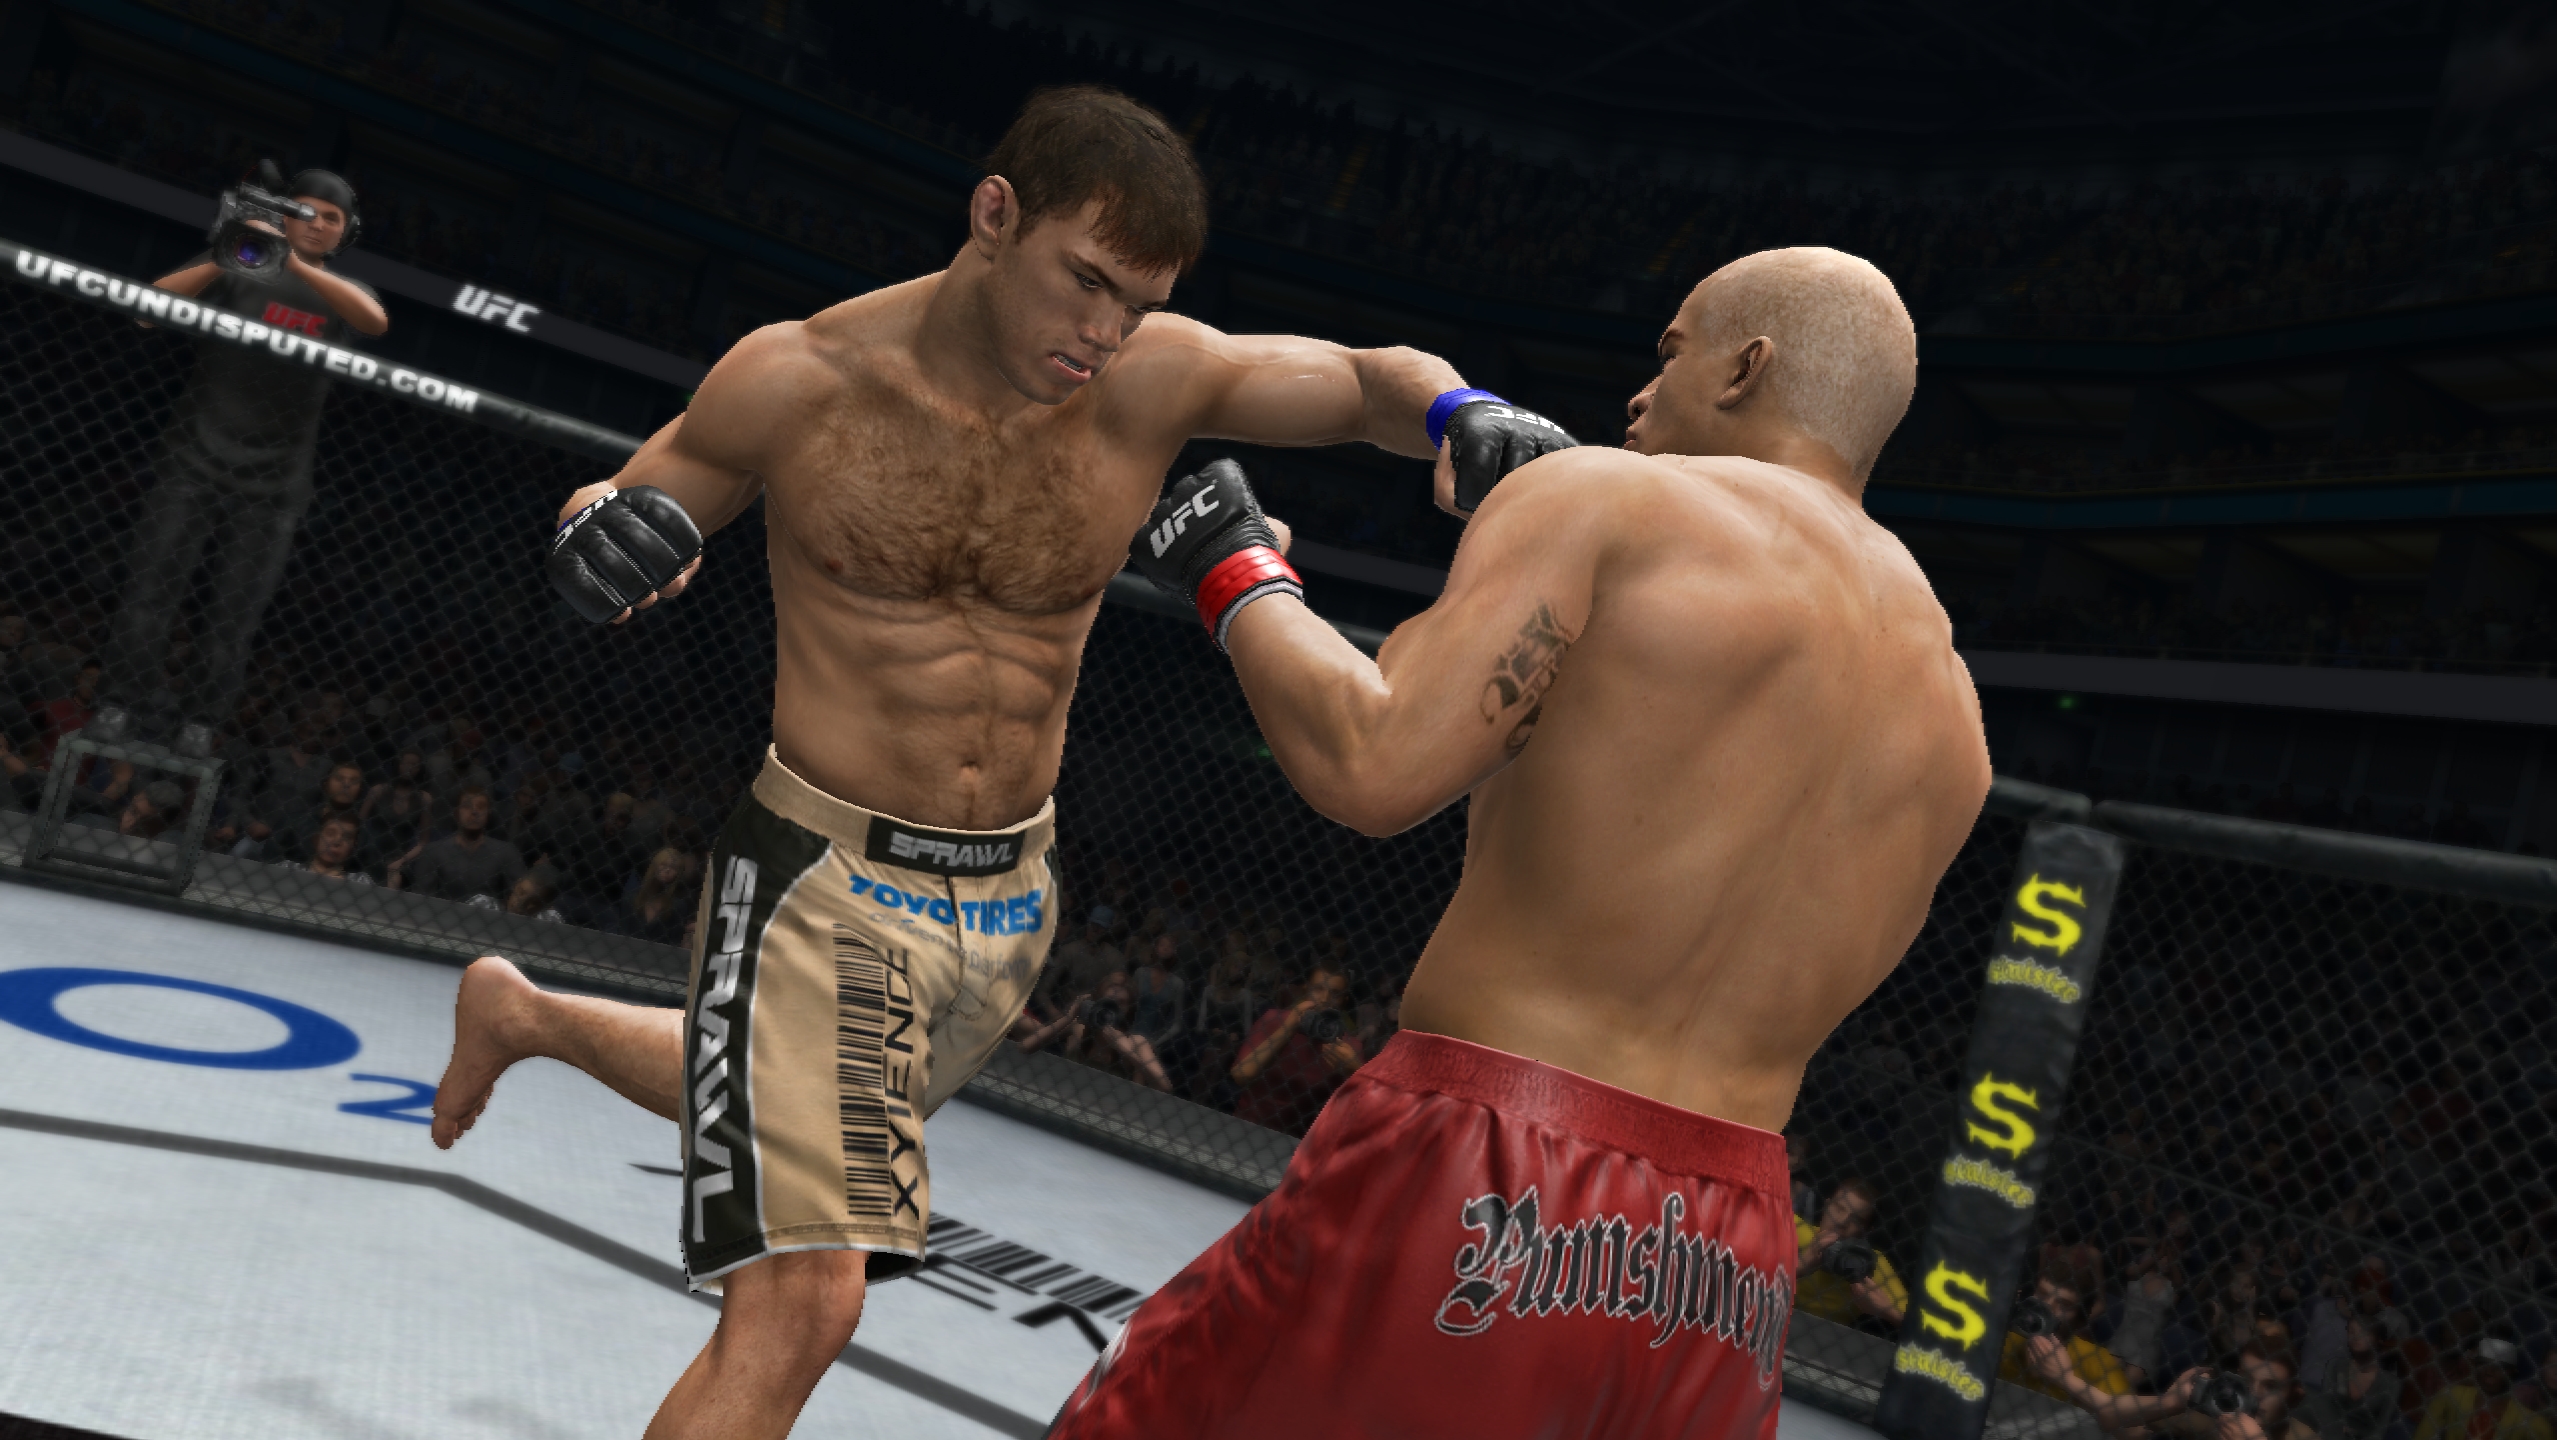 UFC Undisputed 3 beginners guide | GamesRadar+